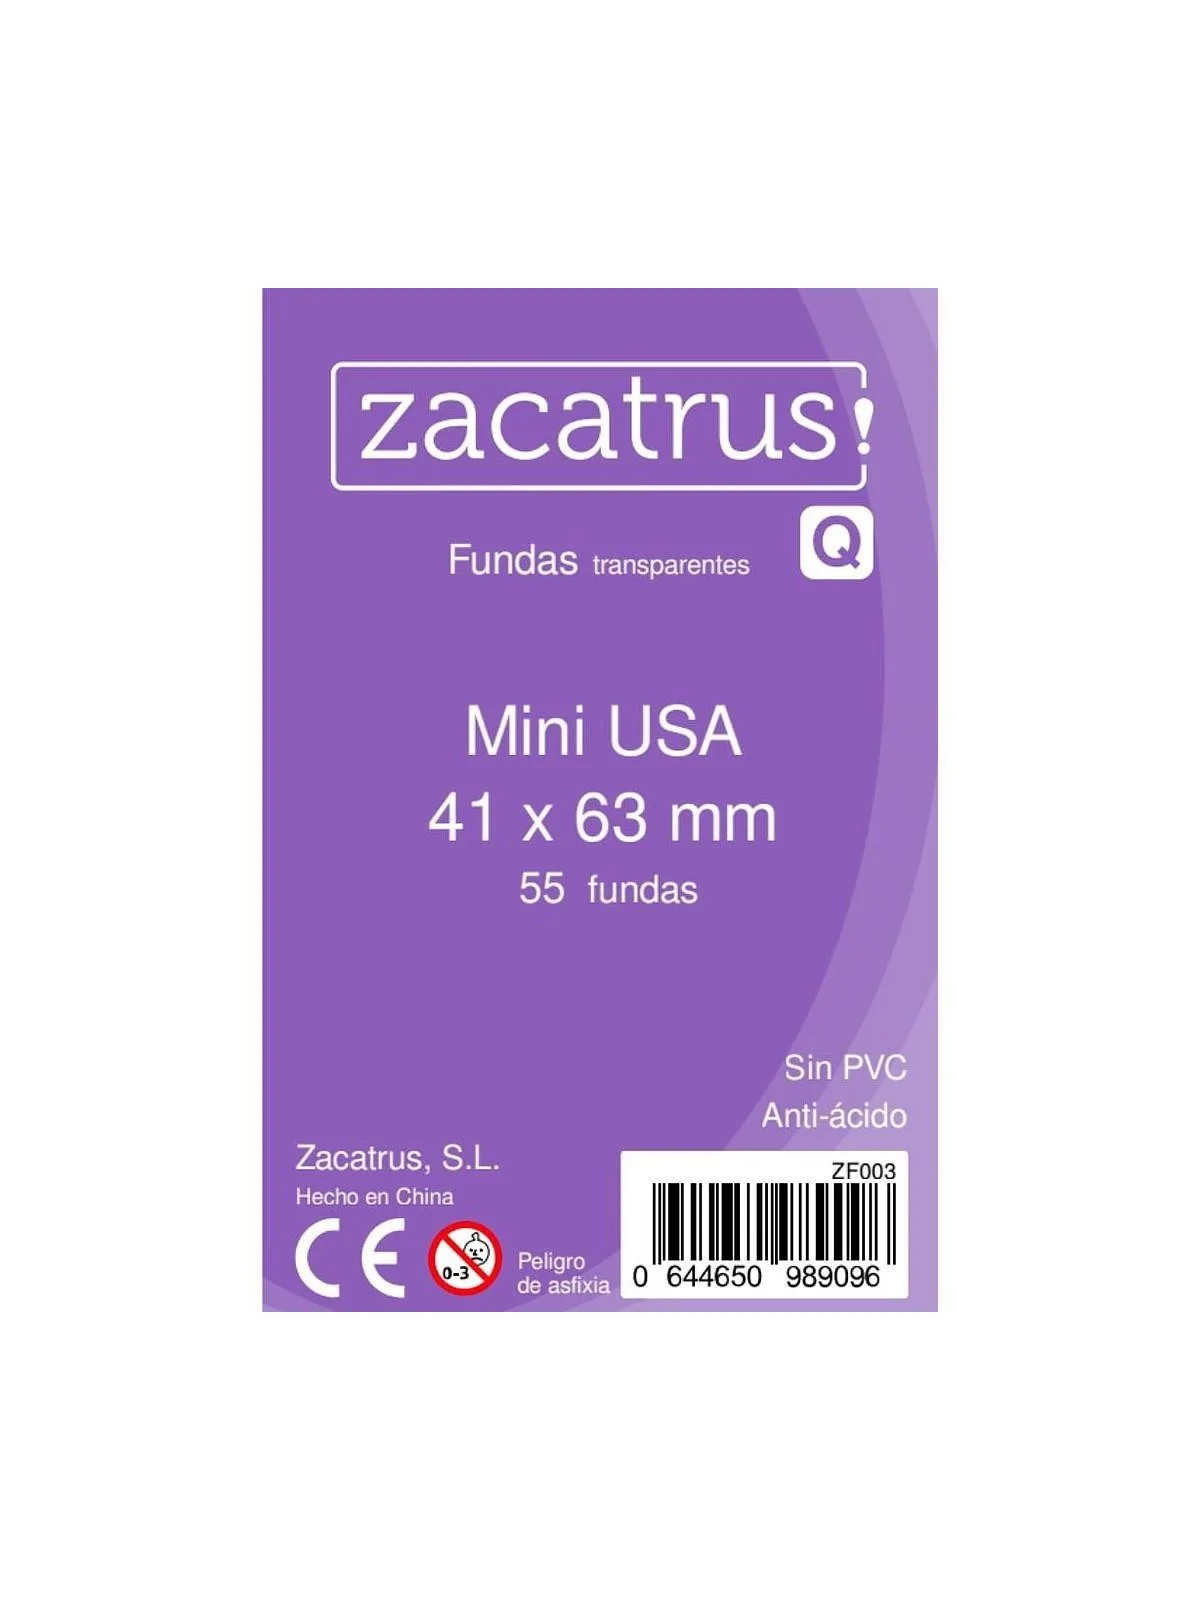 Comprar Fundas Zacatrus Mini USA (41 mm x 63 mm) barato al mejor preci